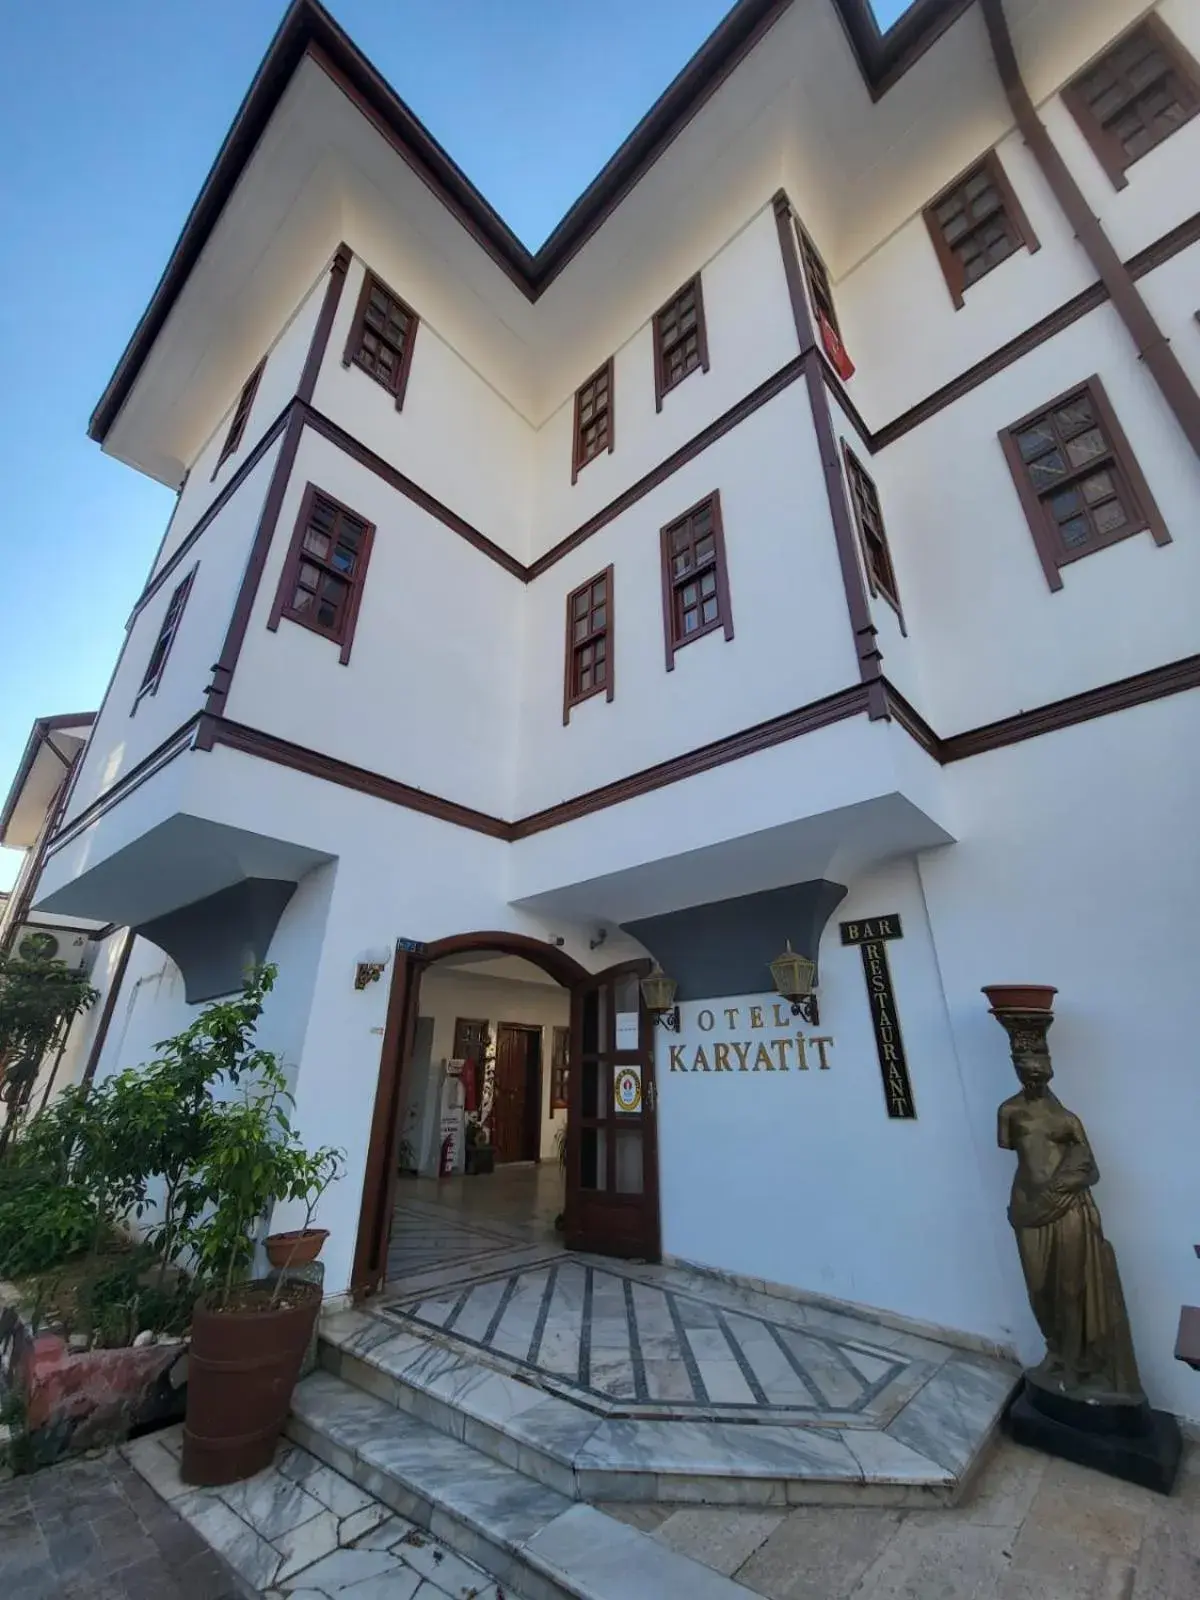 Property Building in Hotel Karyatit Kaleici